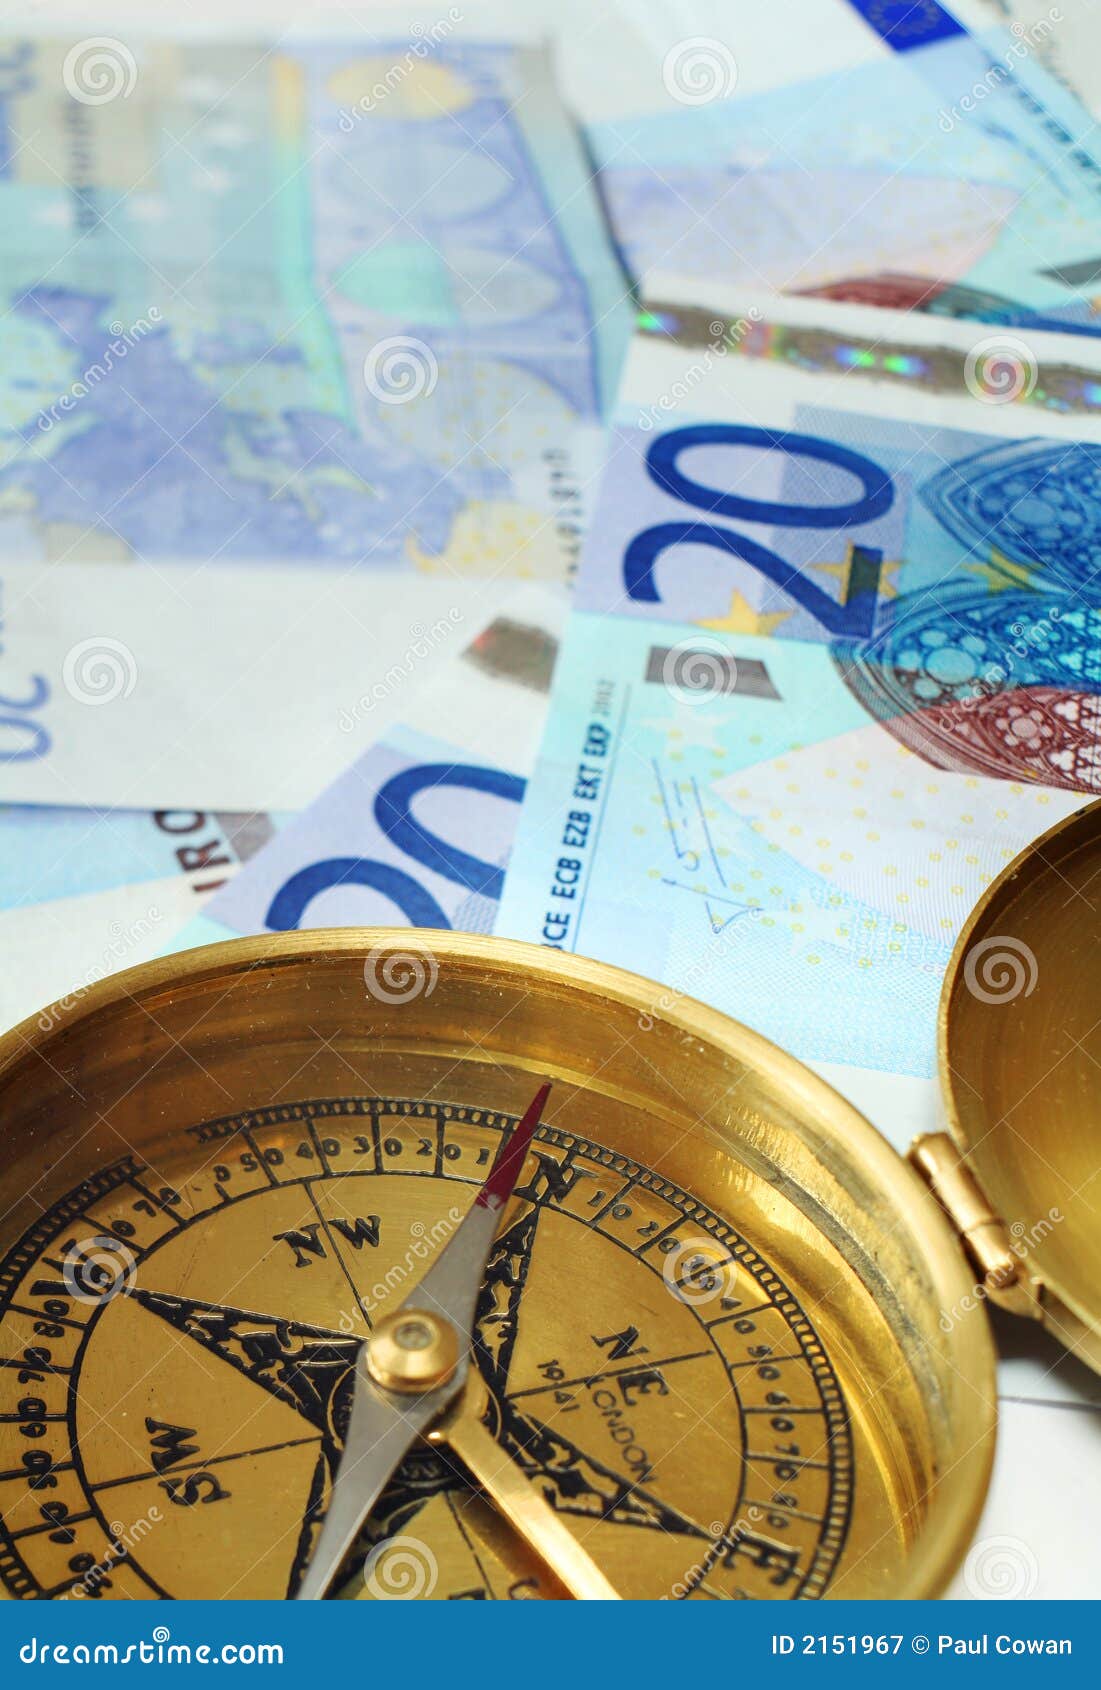 Eurobargeld auf Kurs 2. Ein Kompaß, seine Nadel, die Norden, auf einem Stapel von 20 Euroanmerkungen, eine Entscheidung der guten Investition oder etwas Finanzerfolg symbolisierend anzeigt.